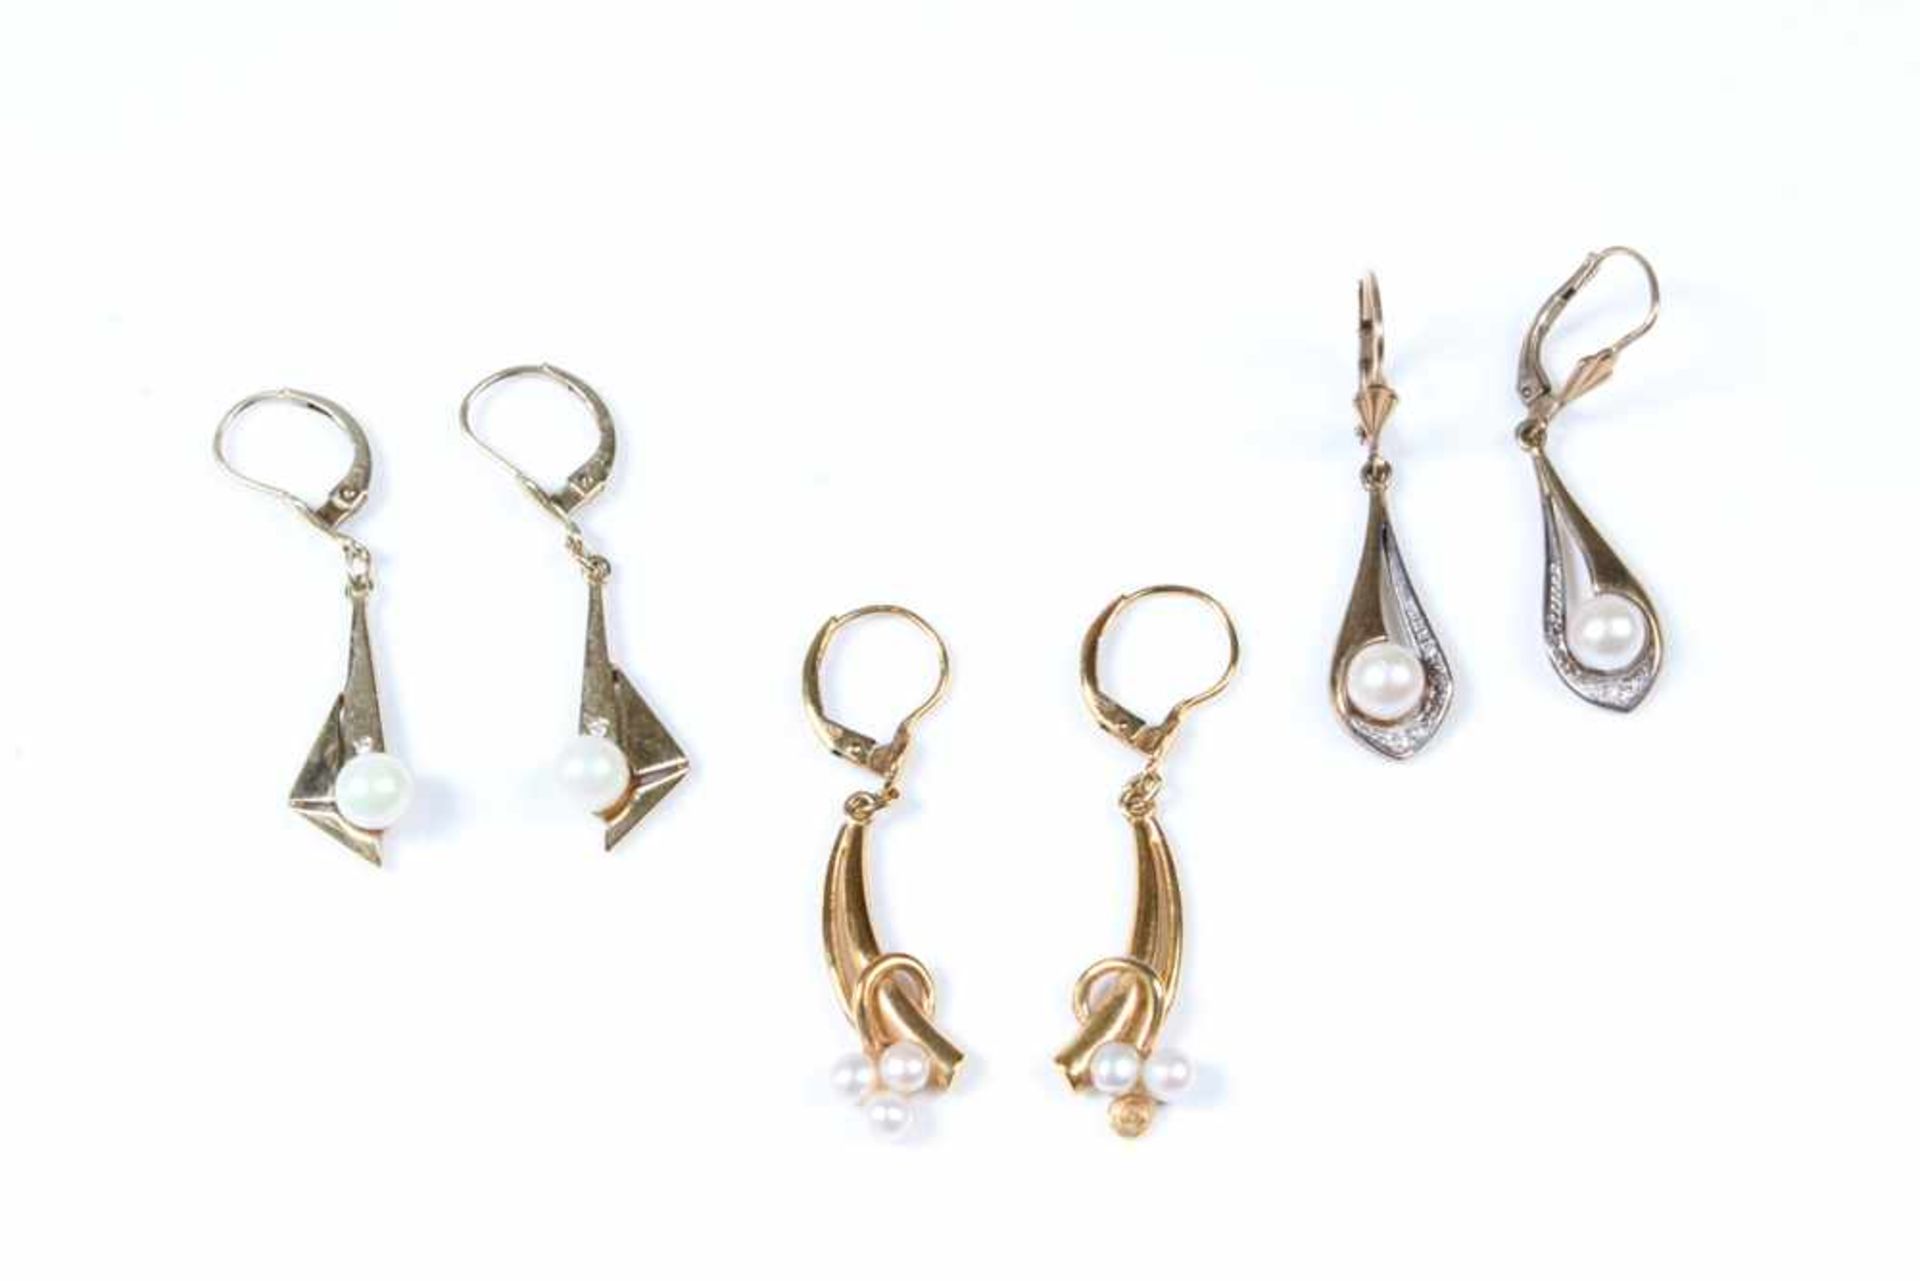 Drei Paar Ohrgehänge.GG 333/375/585 mit Perlen. Gew. ca. 8 g, L: bis 4 cm.